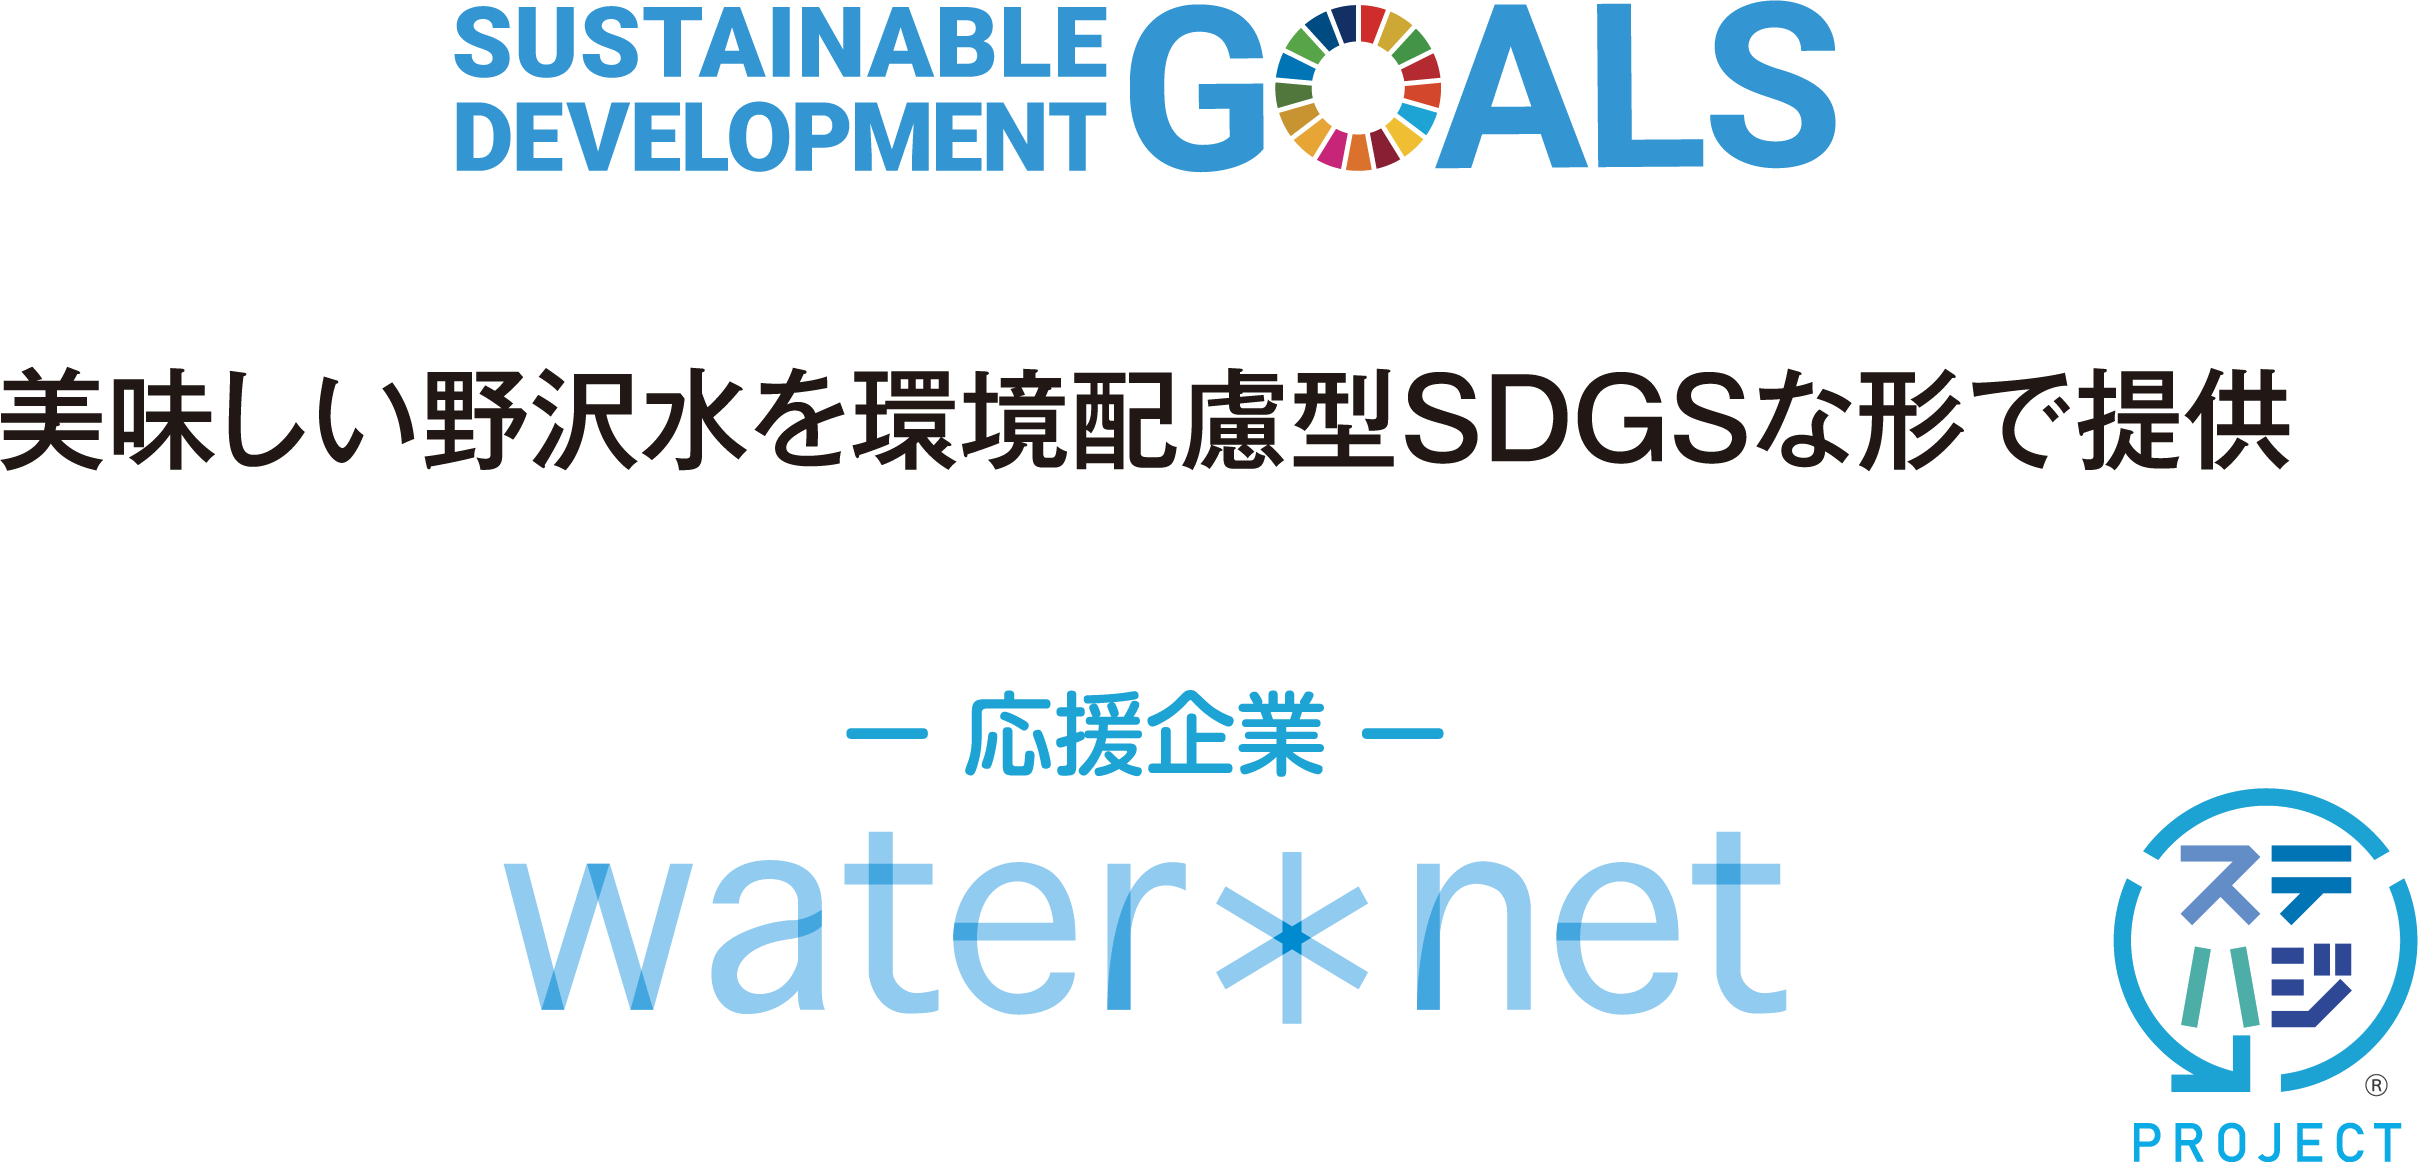 美味しい野沢水を環境配慮型SDGSな形で提供